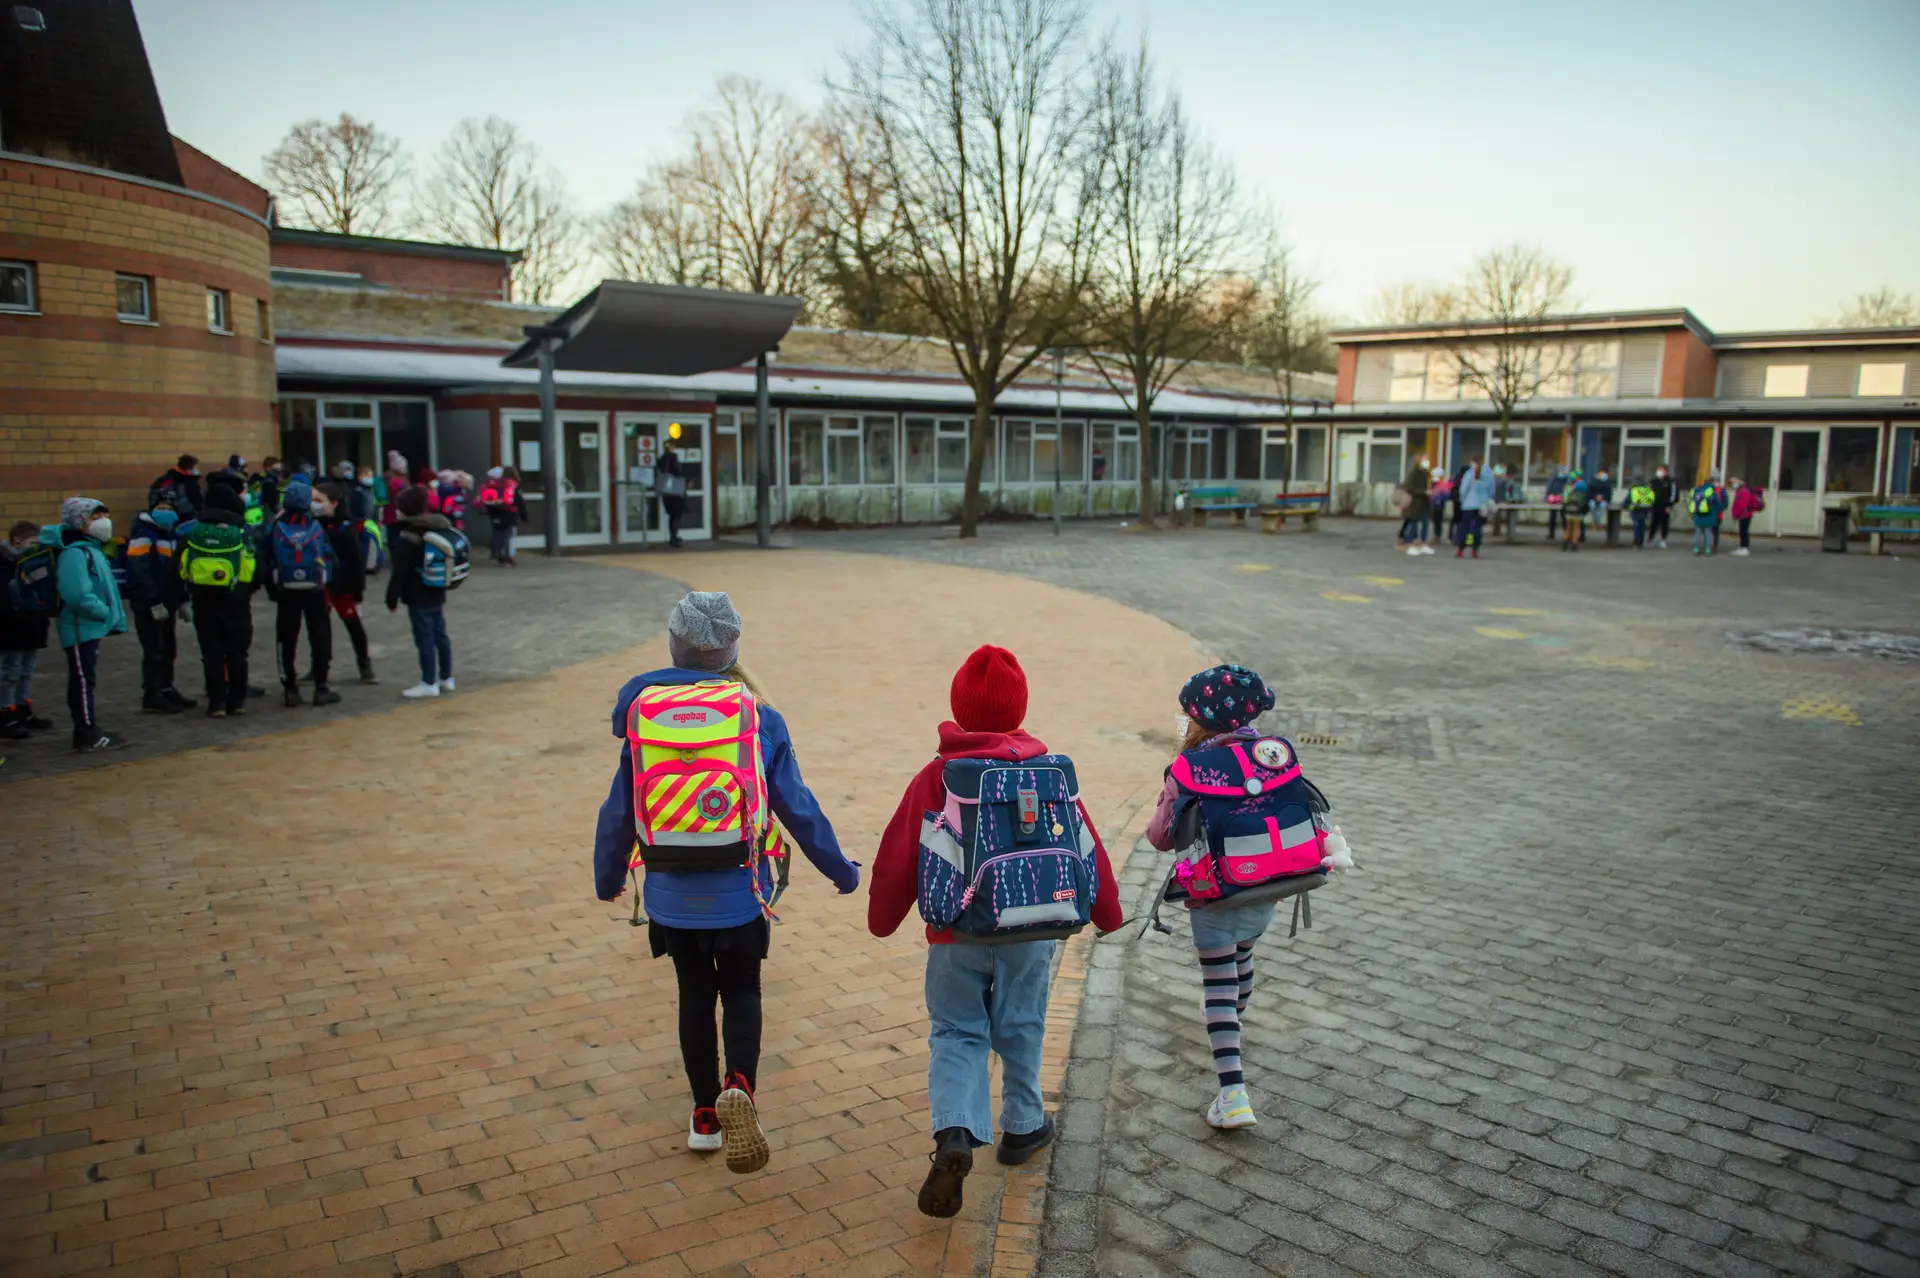 Apesar de um aumento das restrições, mais de metade dos estados federados da Alemanha deram prioridade à reabertura das escolas primárias e jardins de infância